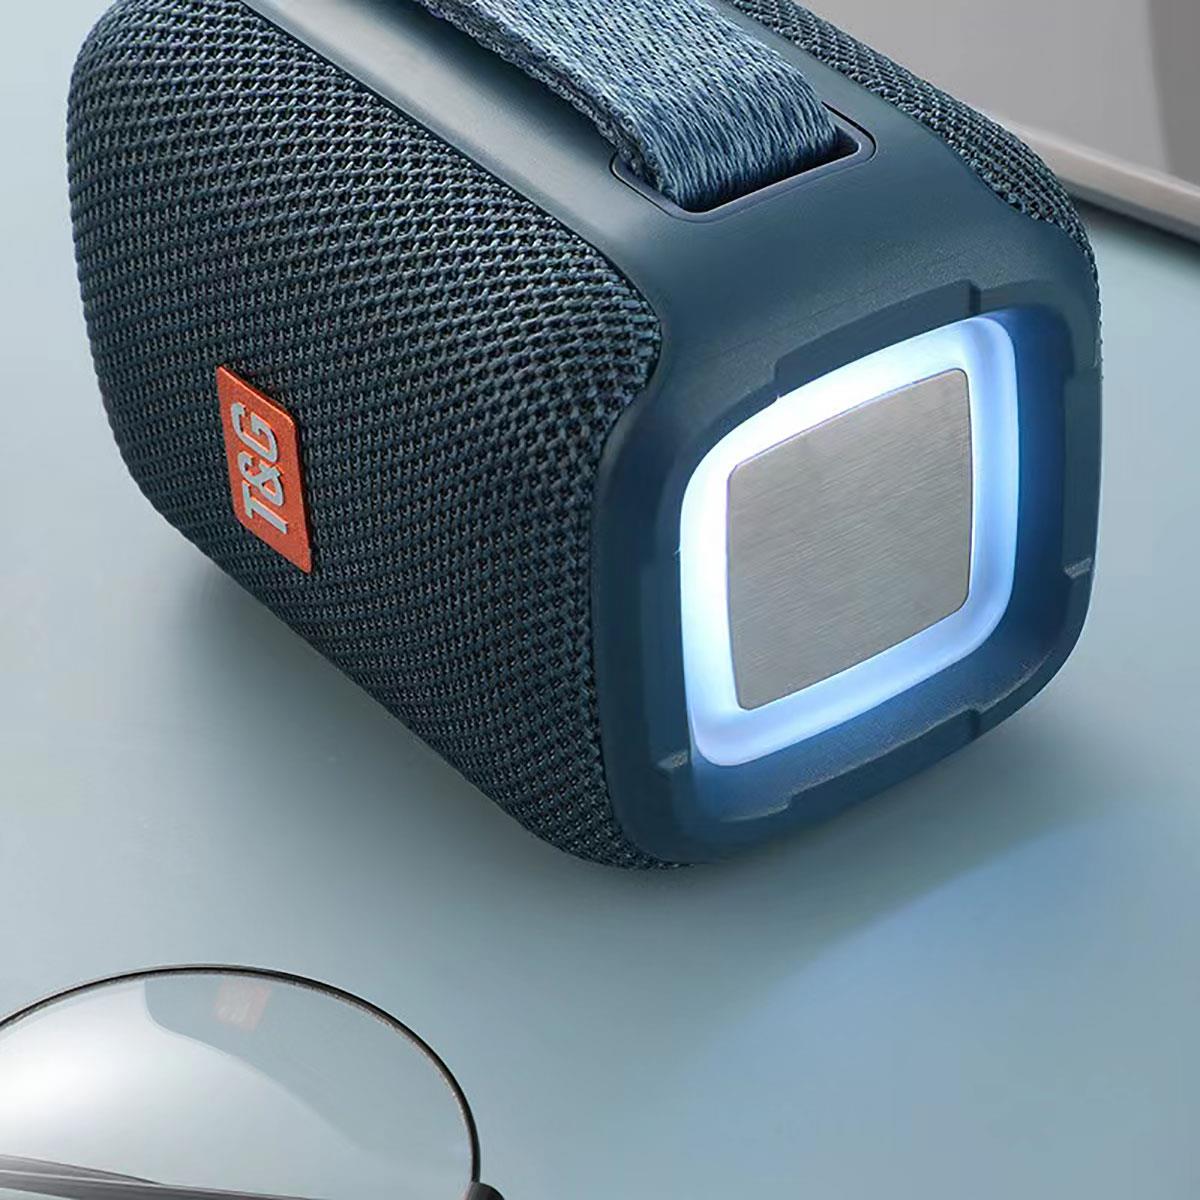 Zore TG339 Ayarlanabilir Renkli Işıklı El Askılı Bluetooth Hoparlör Speaker